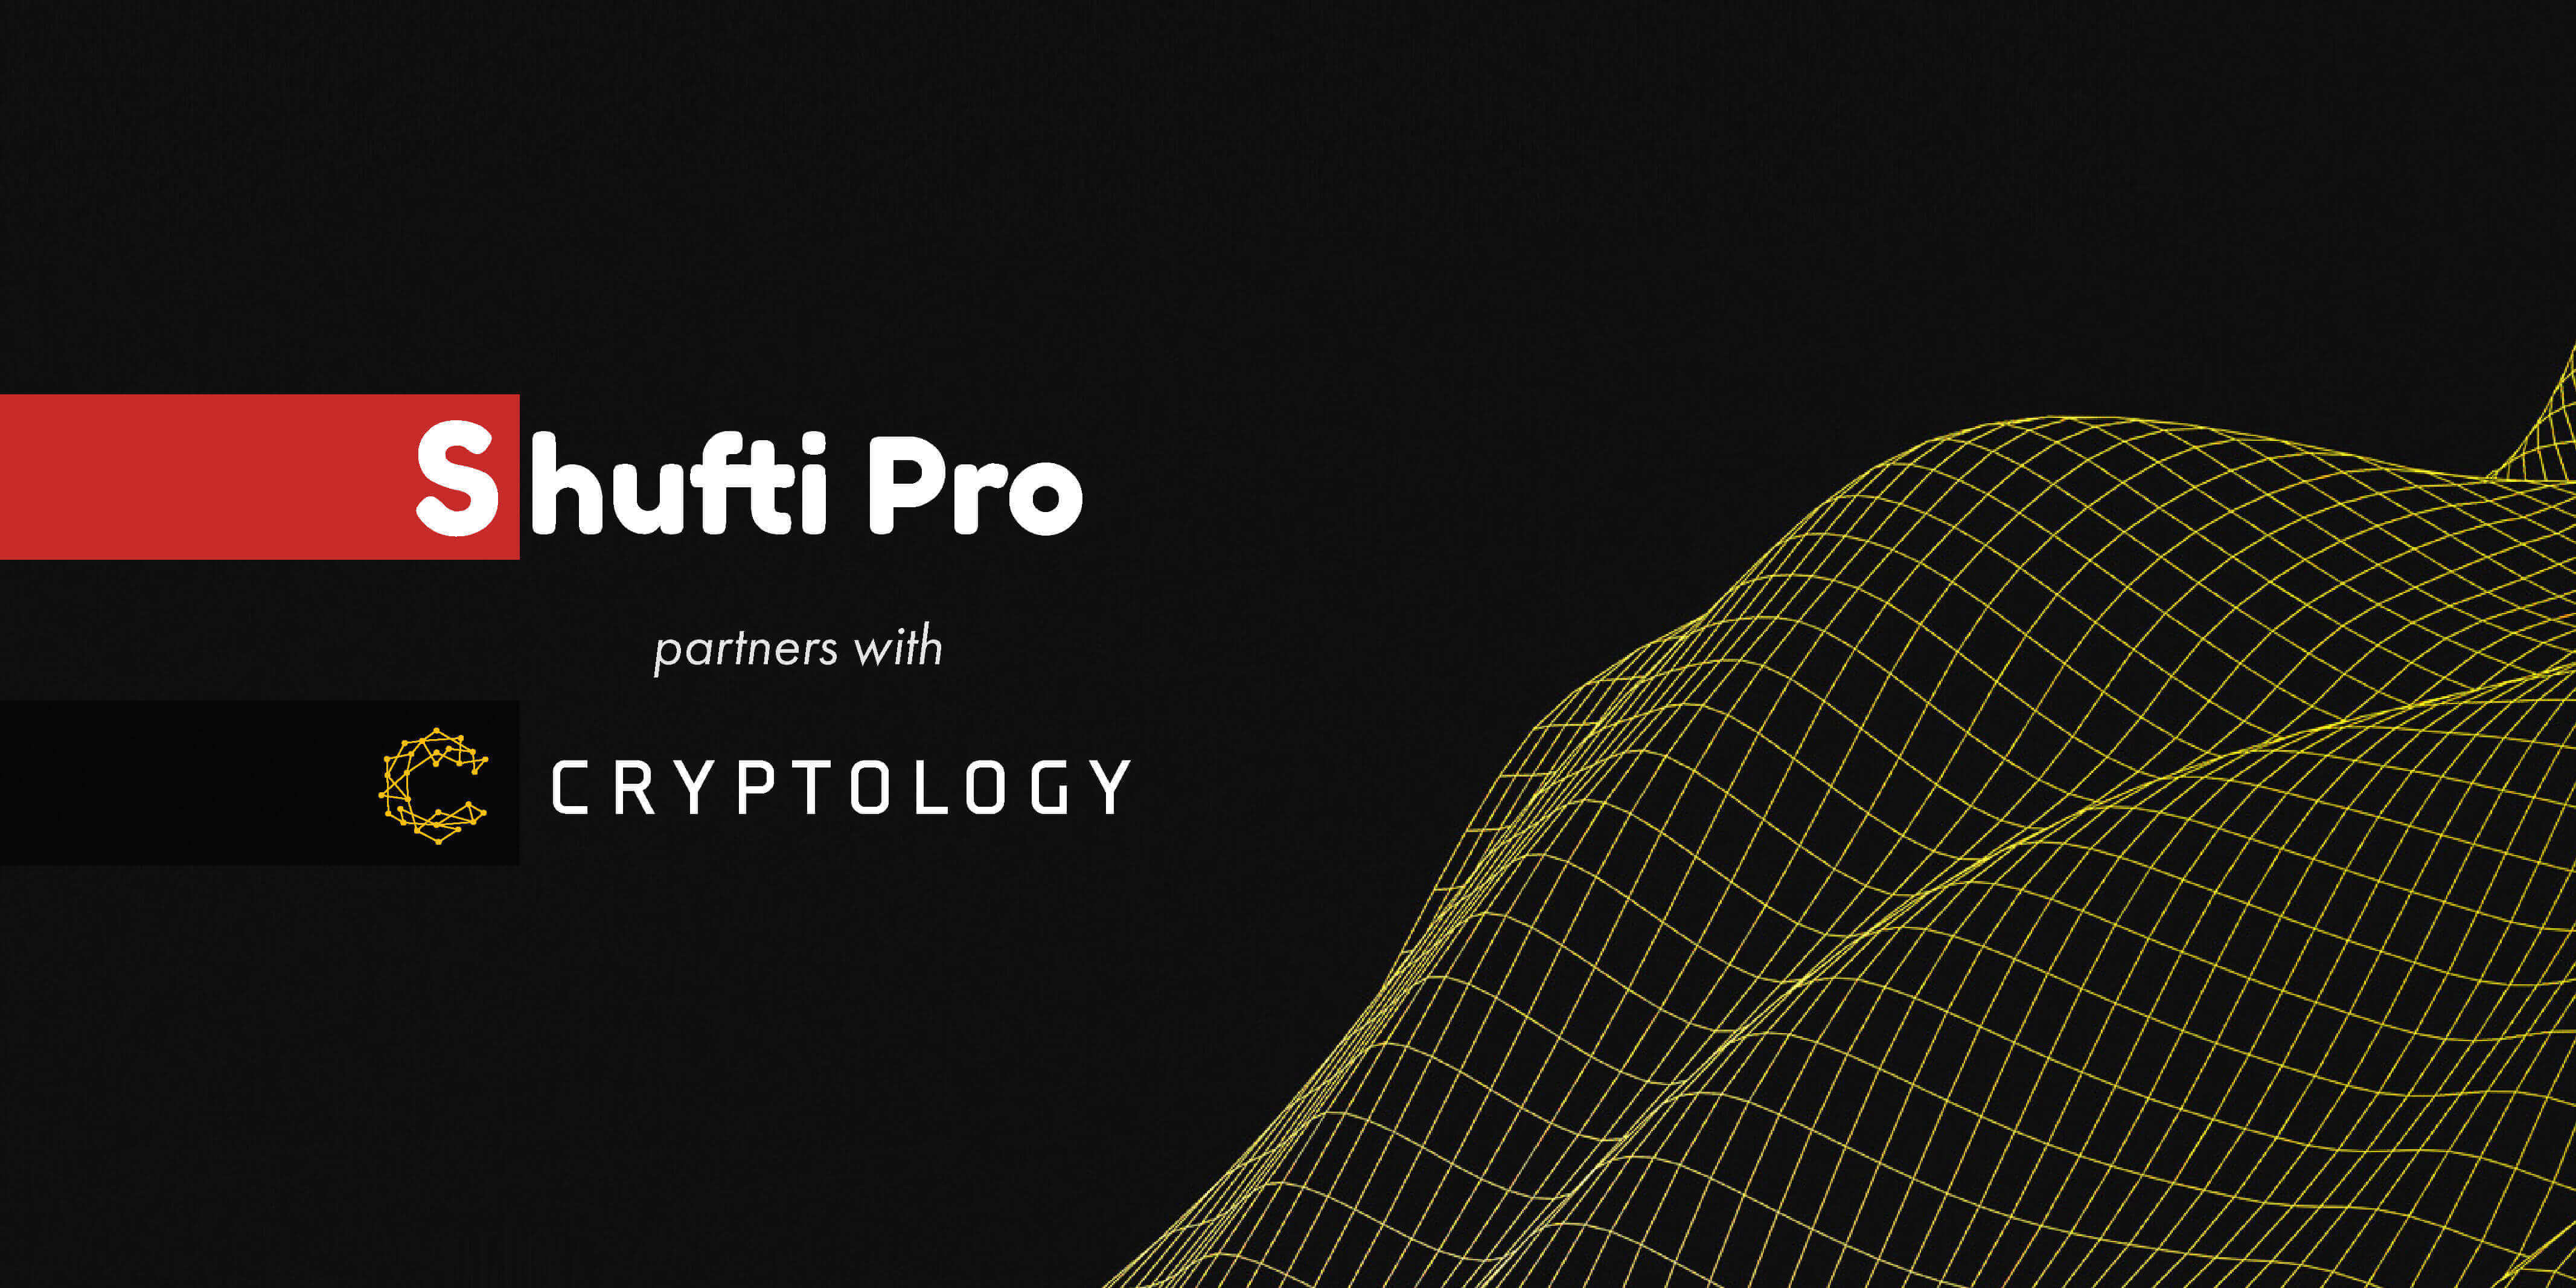 shufti pro cryptology partnership